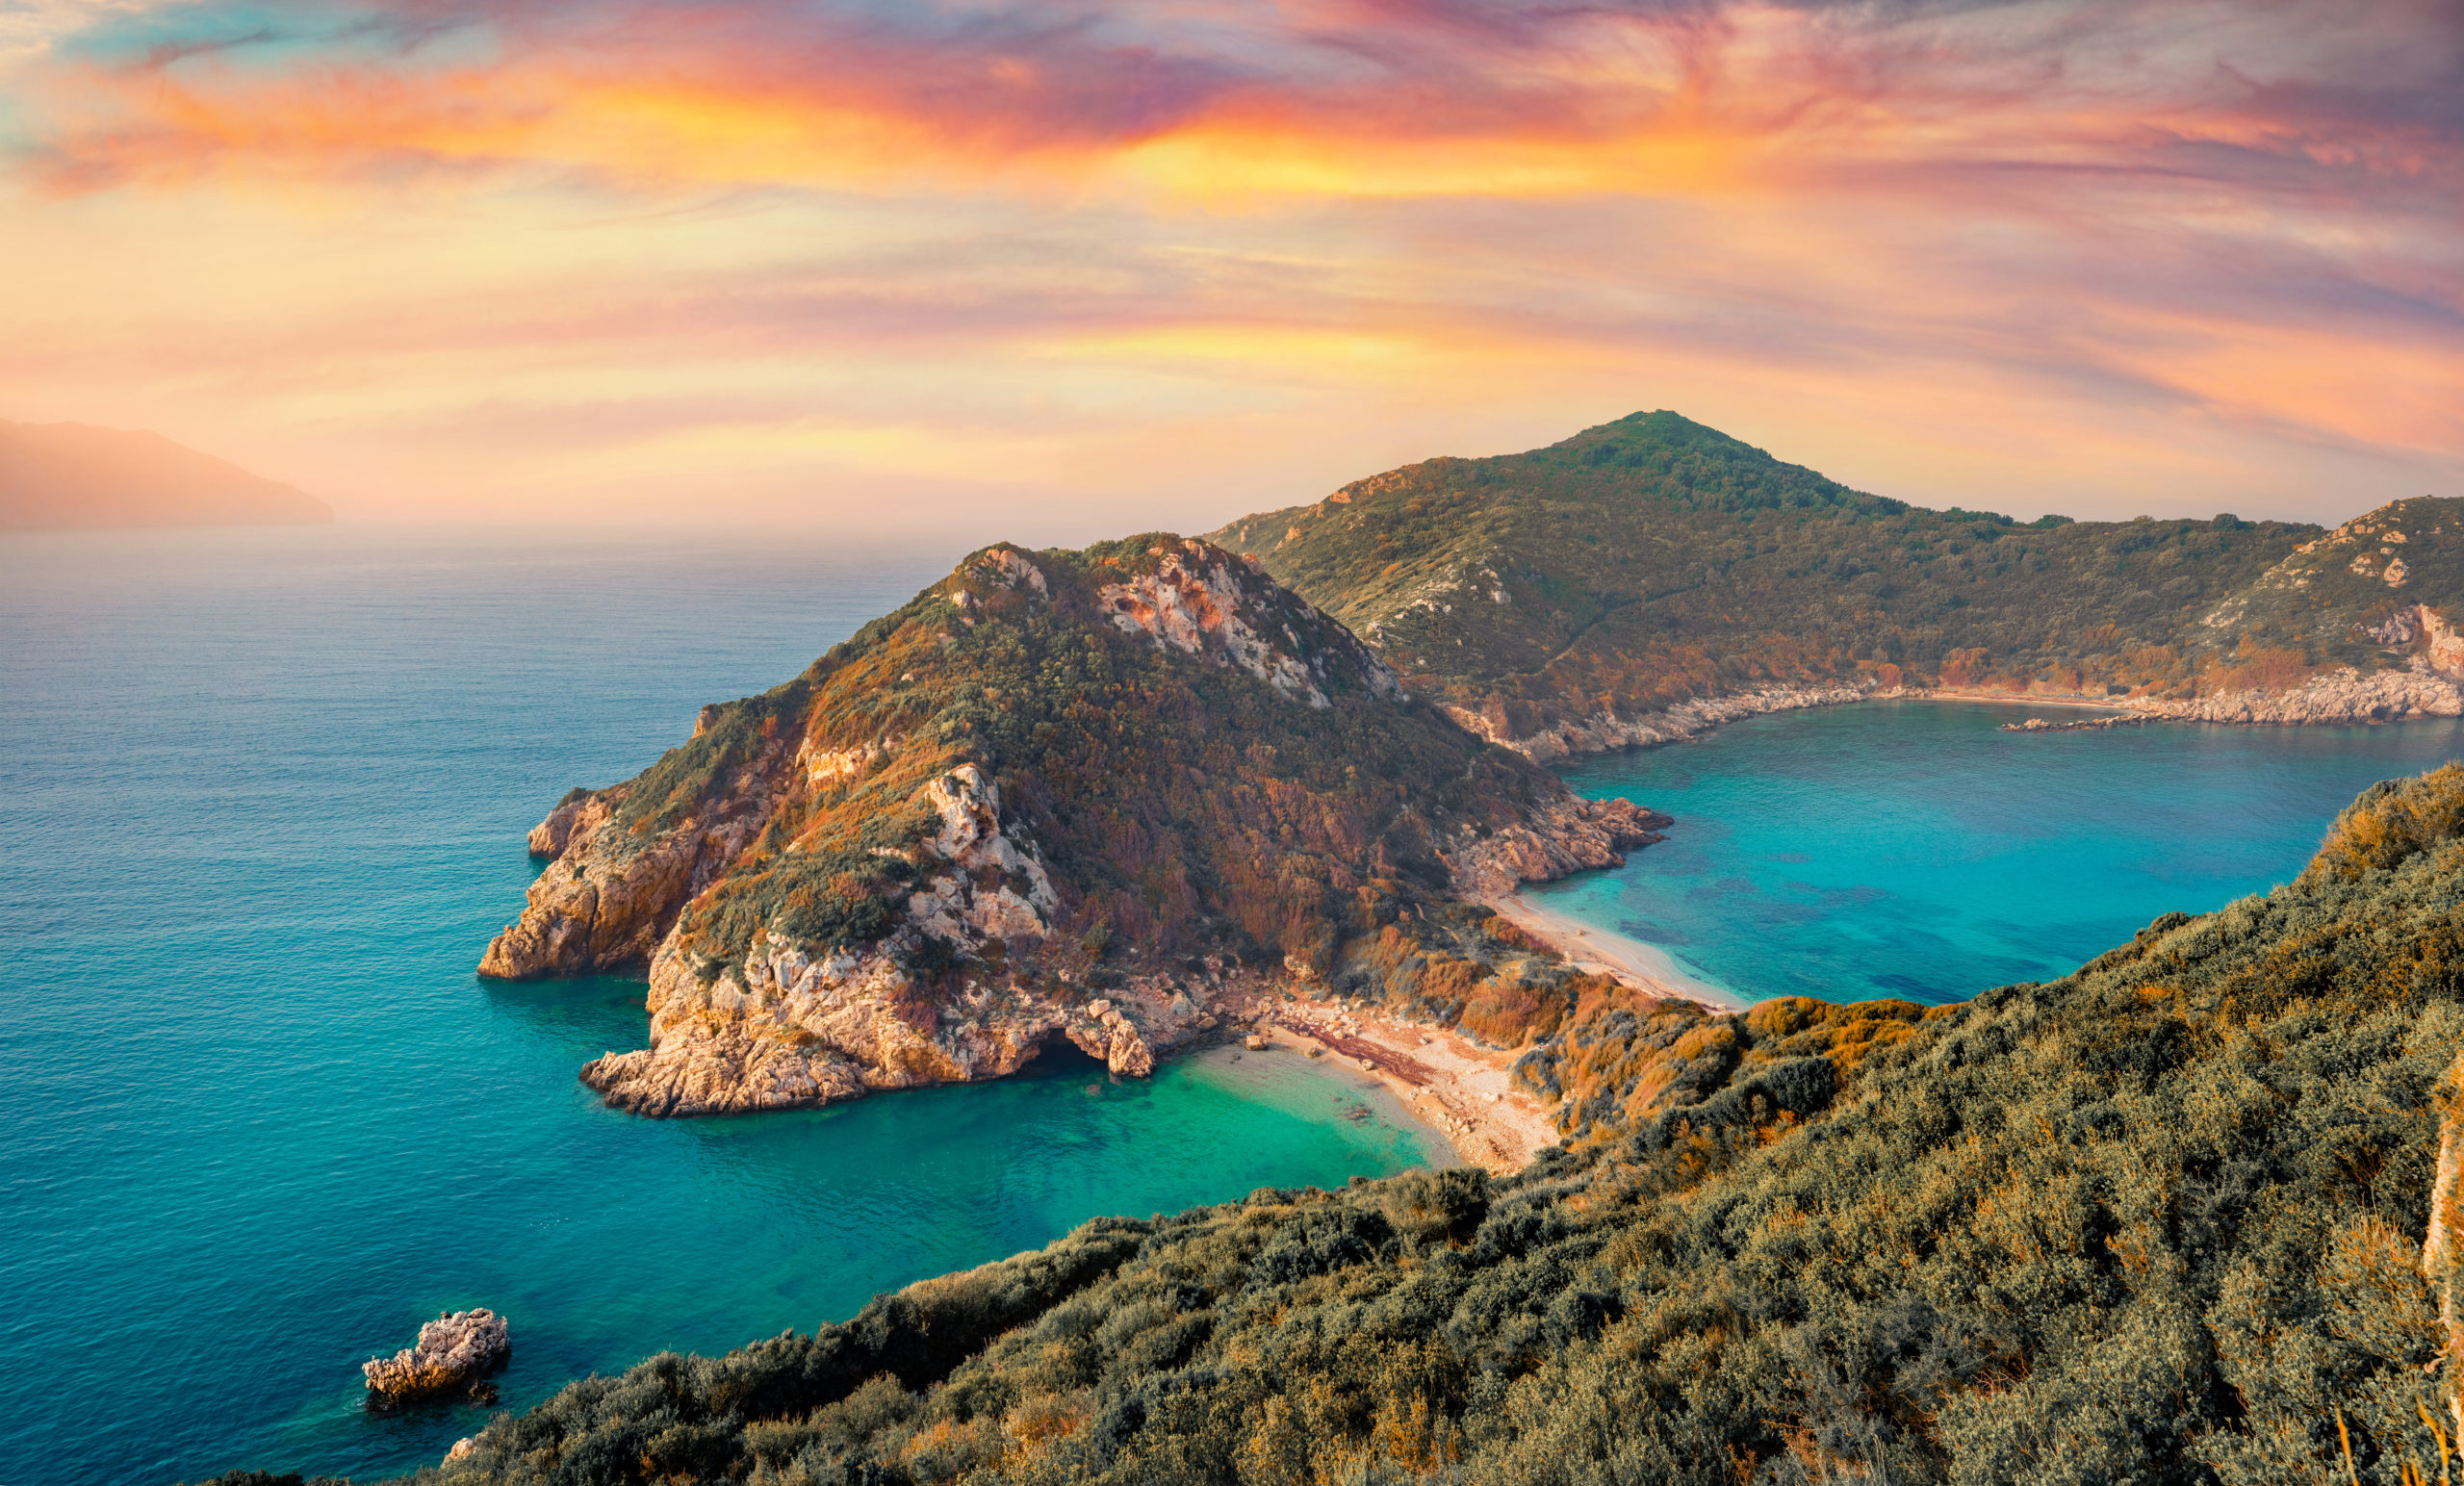 Explorez Corfou, la plus verte des îles grecques